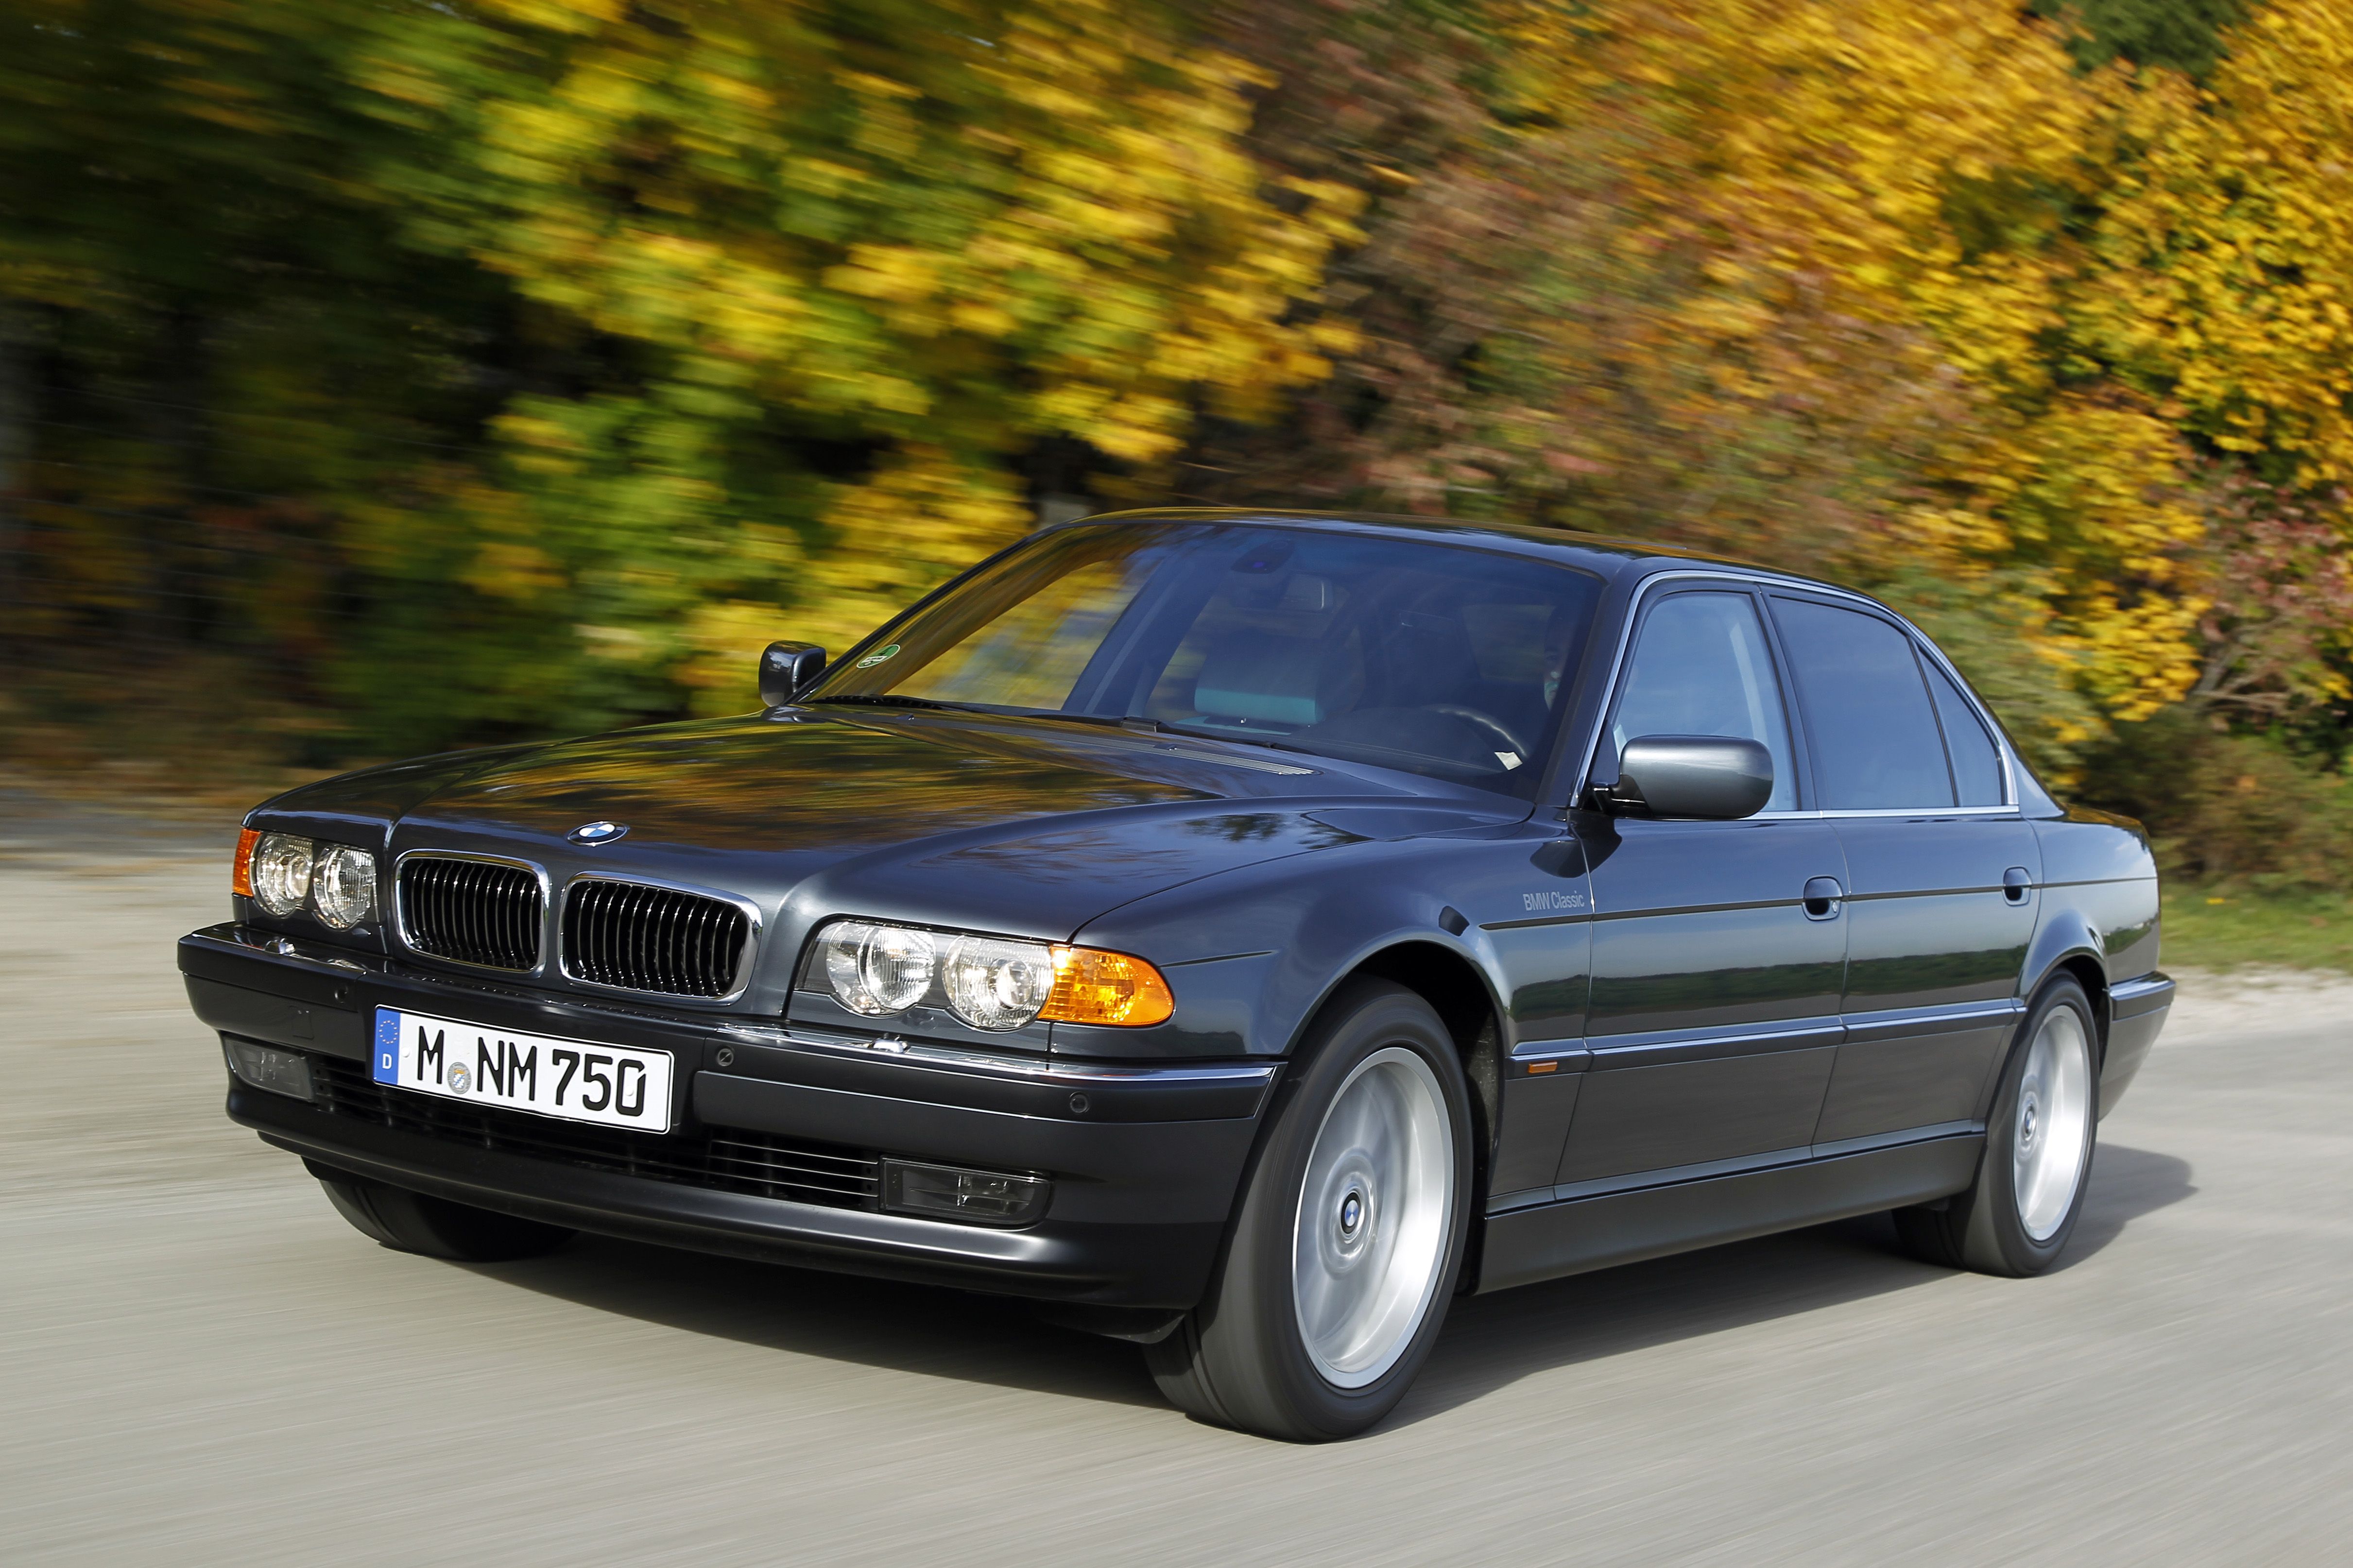 Двигатели BMW 7 серии, краткий обзор агрегатов всех поколений BMW 7-Series, технические характеристики двигателей, частые проблемы двигателей, лучшие и худшие моторы BMW 7 серии